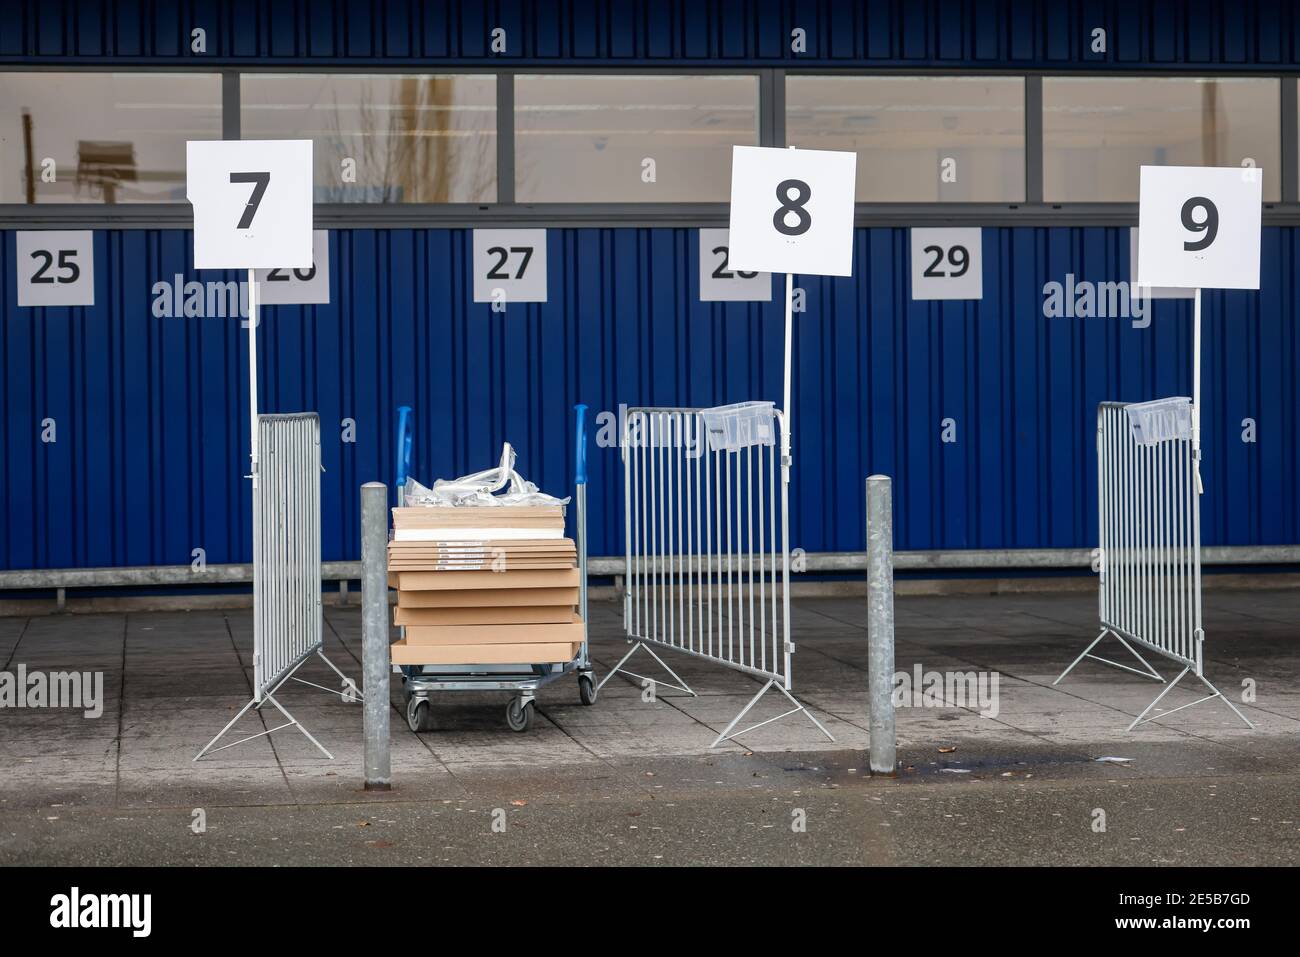 Duisburg, Nordrhein-Westfalen, Deutschland - Click and Collect bei Ikea, kontaktloses Einkaufen, Mitarbeiter legen die bestellte Ware in Sammelboxen, af Stockfoto